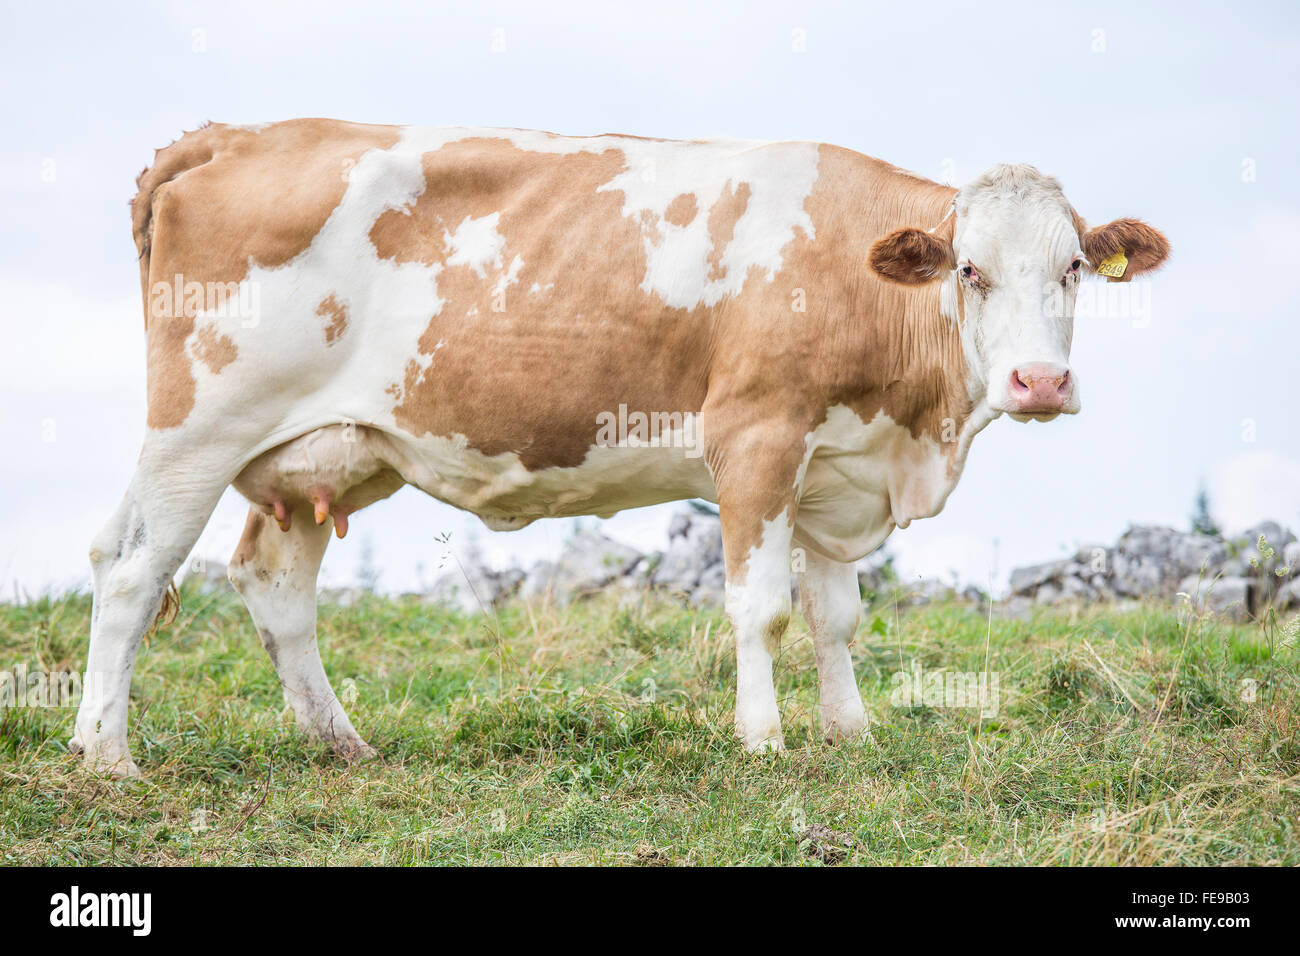 Enorme vaca de pie sobre una pastura y mirando a la cámara Foto de stock